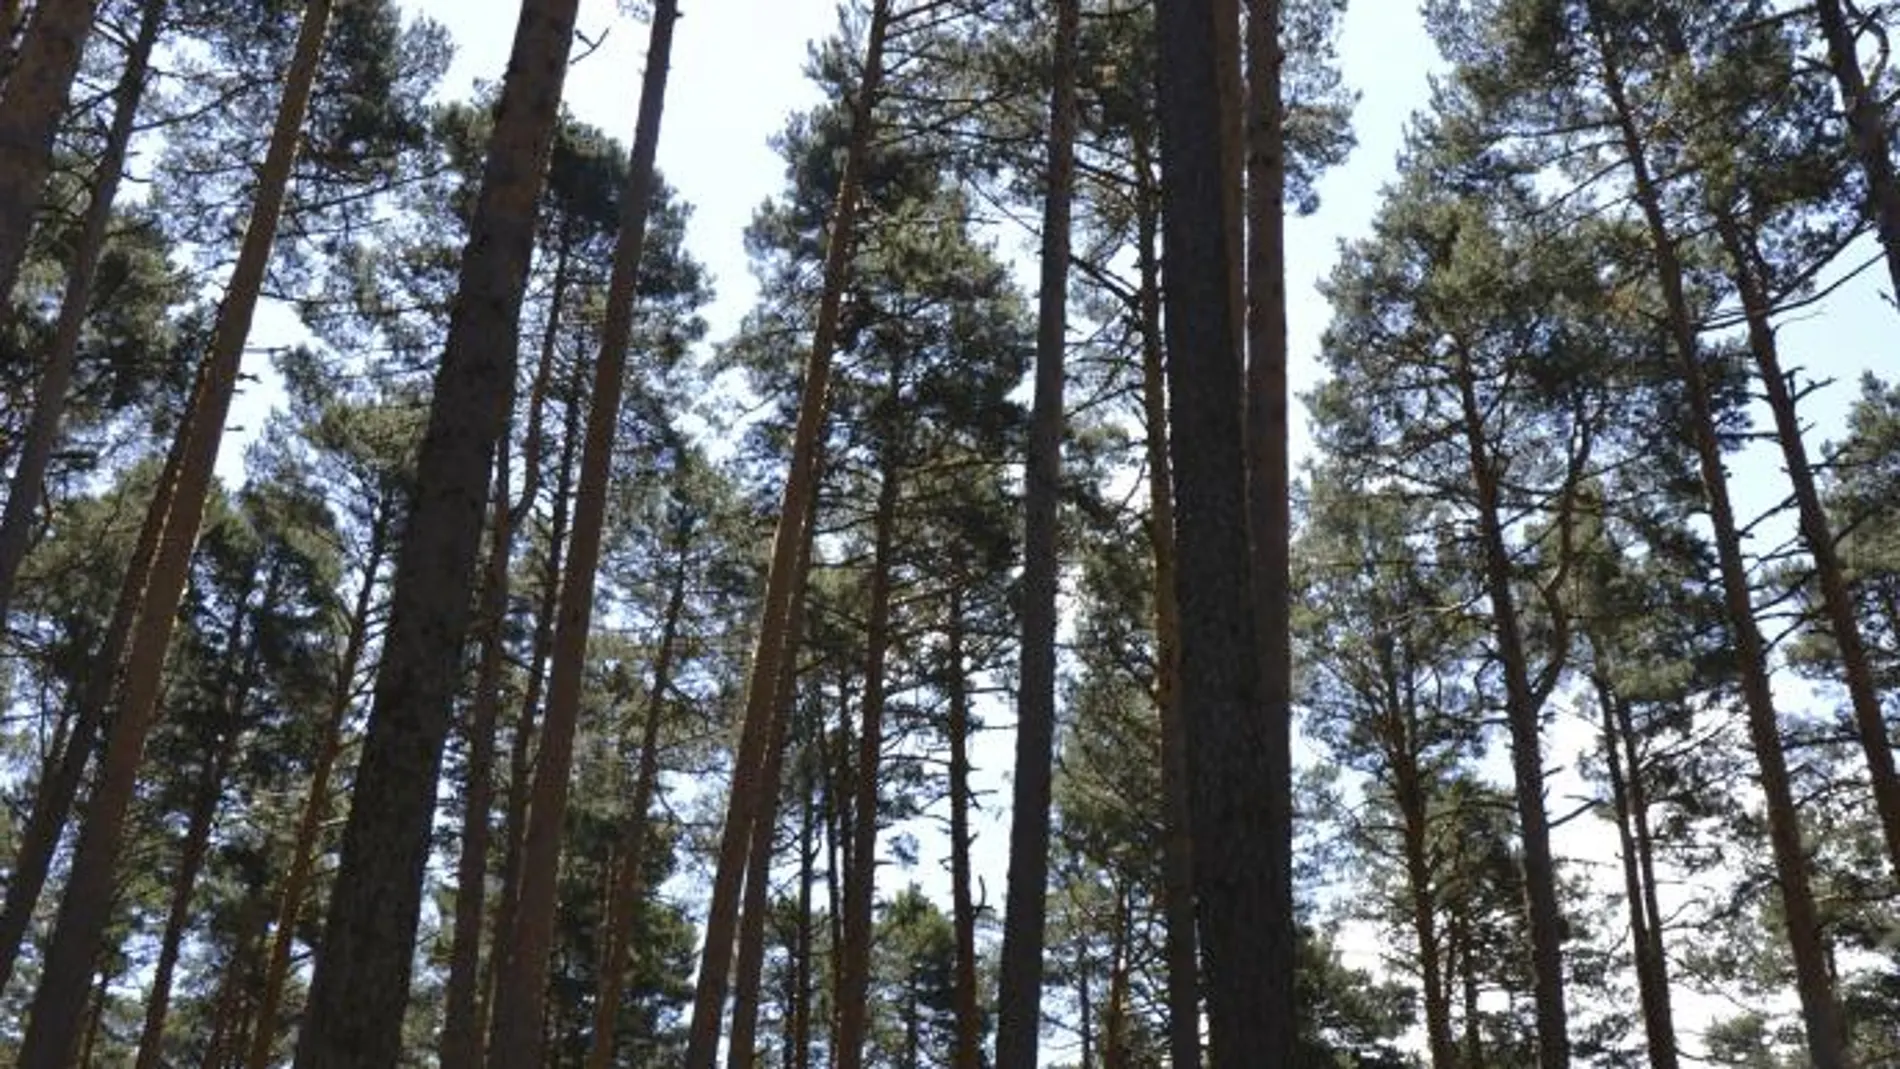 La masa forestal española es, tras la de Suecia, la más grande e importante de Europa, y una fuente de riqueza y de empleos, pero también de servicios ecológicos y sociales difícilmente evaluables y cuantificables. En la imagen, pinares de Valsaín en Segovia